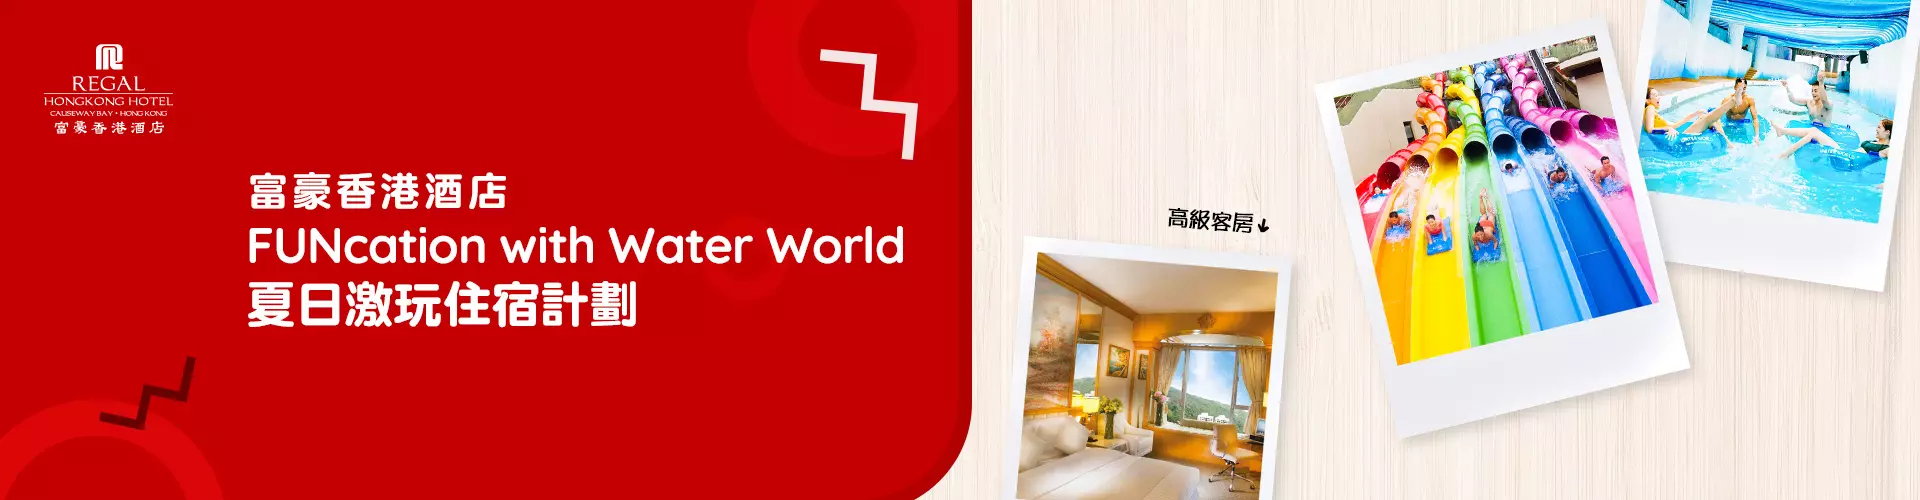 香港富豪酒店 -「FUNcation with Water World」夏日激玩住宿計劃